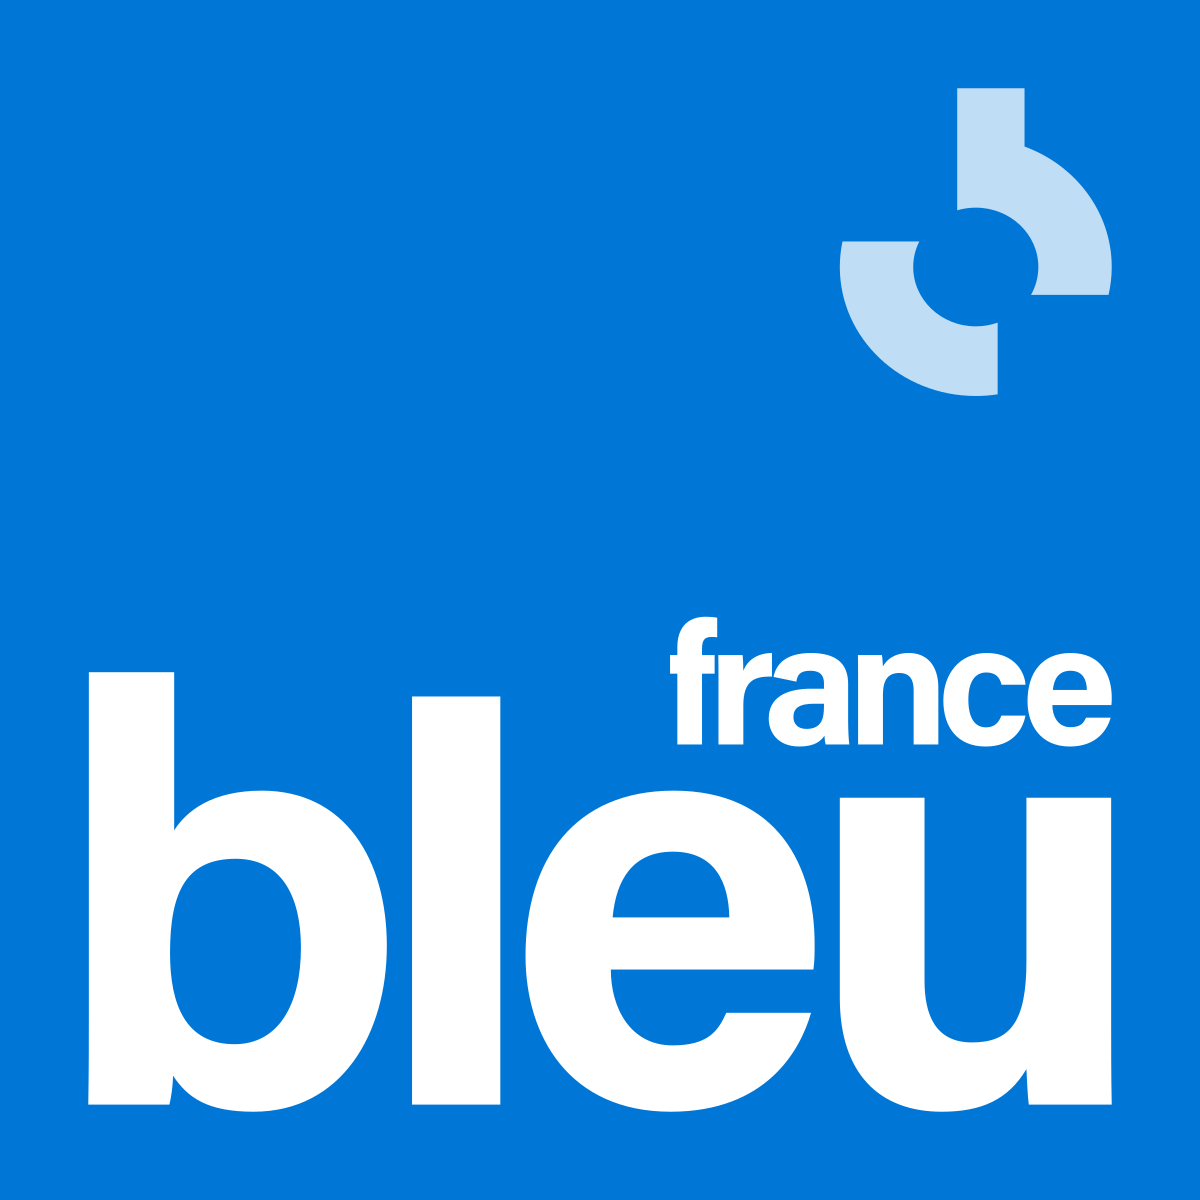 France_Bleu_2021.svg